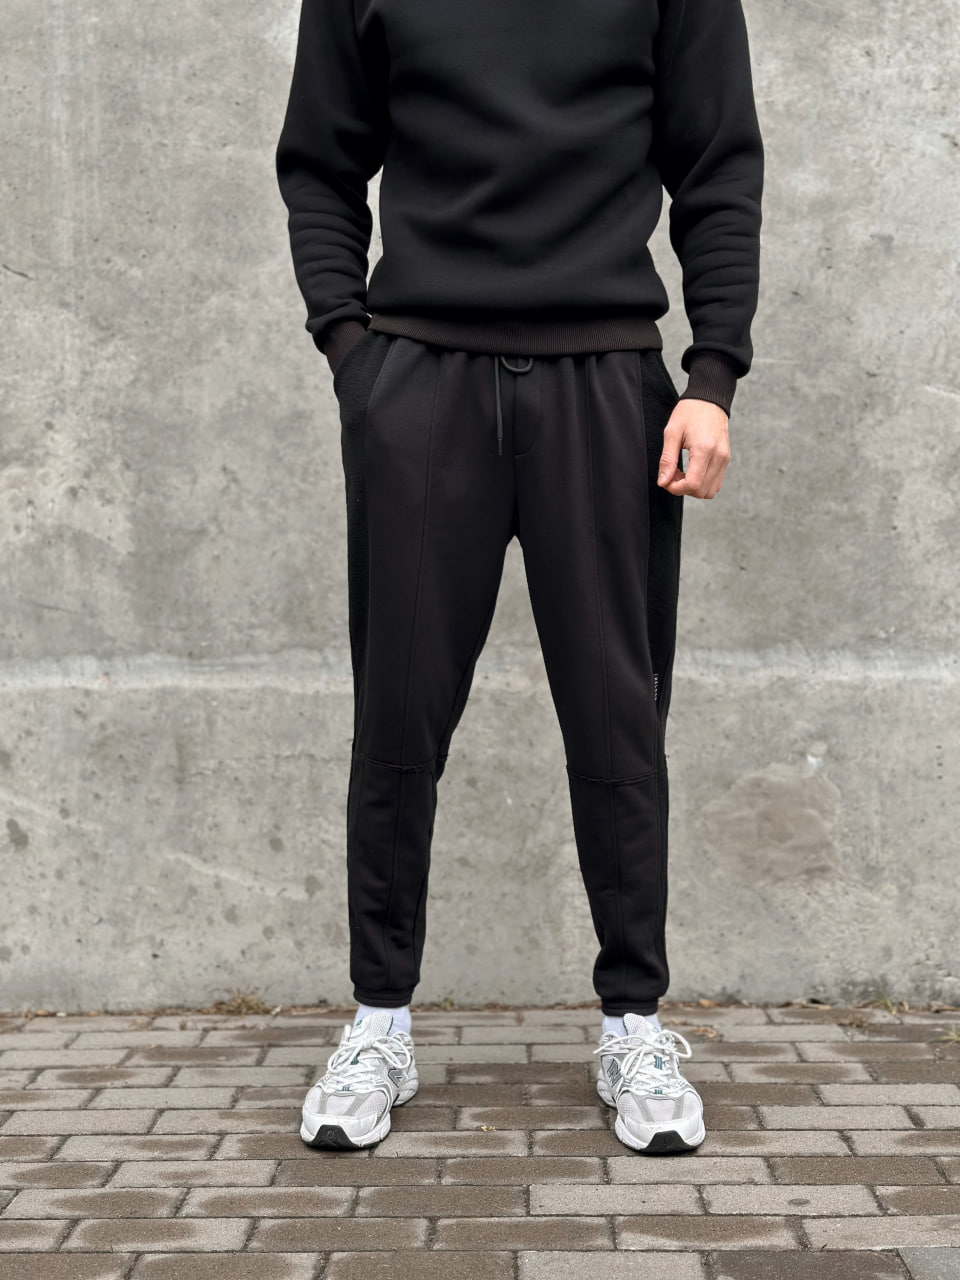 Чоловічі спортивні штани трикотажні Reload Rough чорні / Спортивки завуженні стильні демісезонні - Фото 7